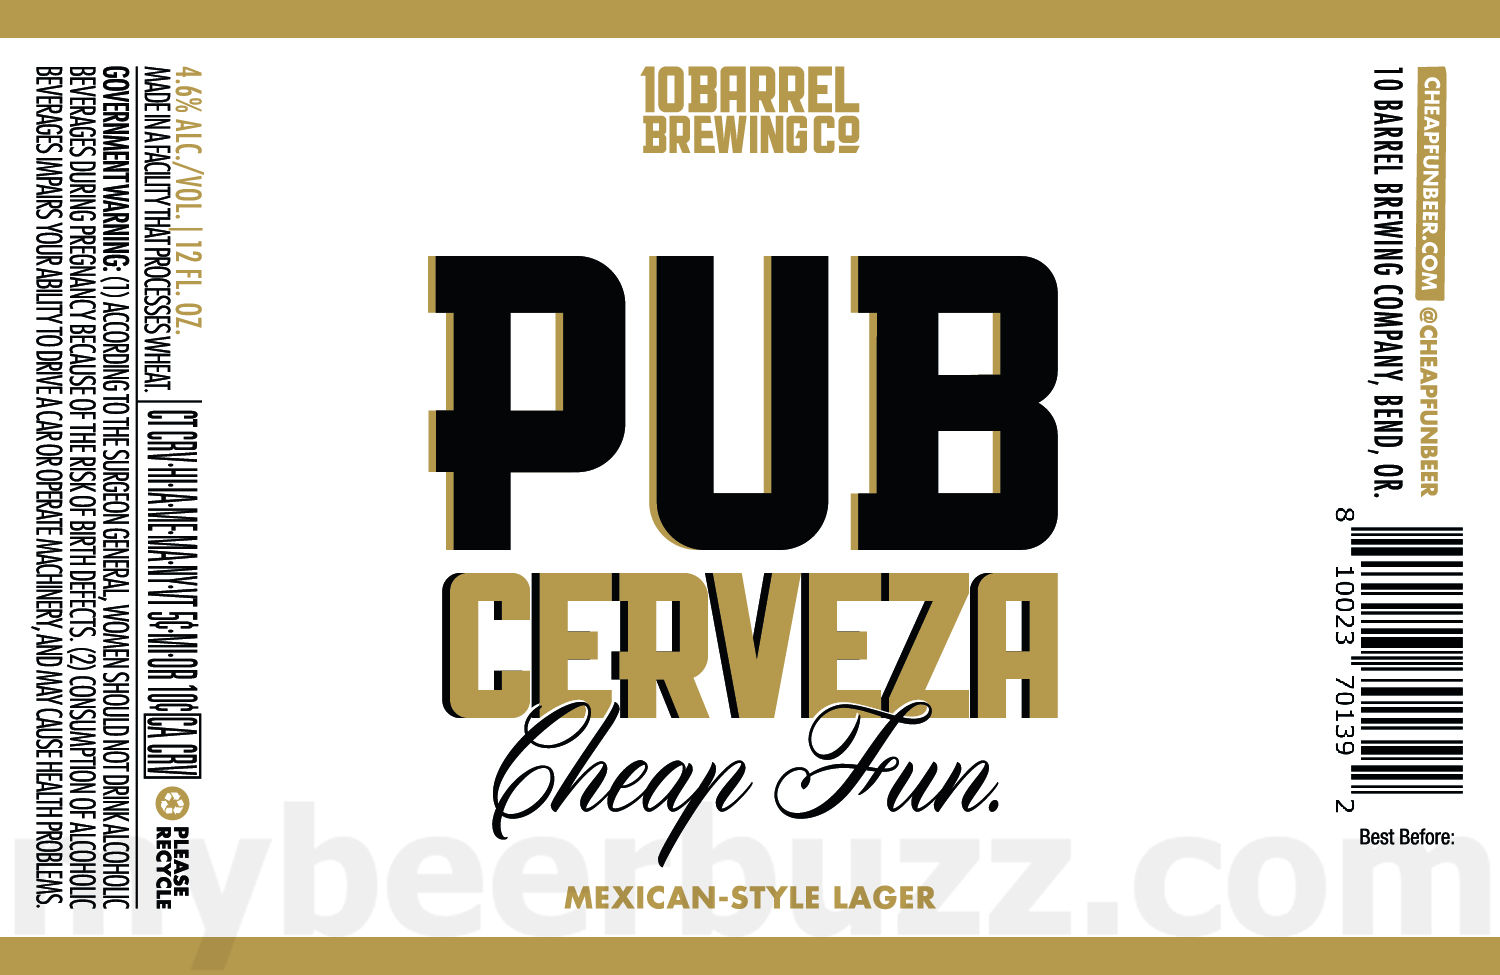 10 Barrel Adding Pub Cerveza Cheap Fun Mexican-Style Lager